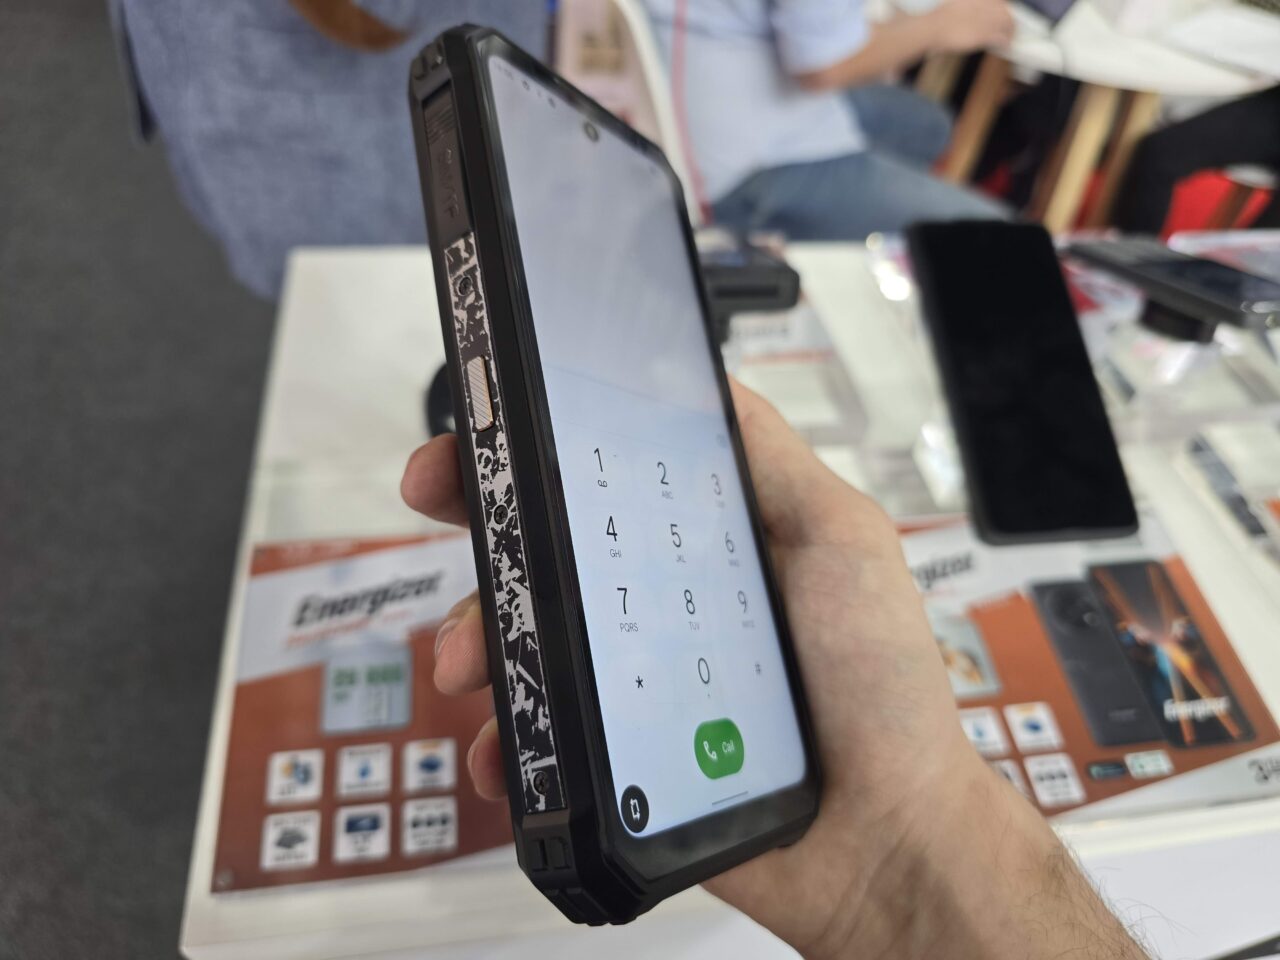 Ręka trzymająca smartfon Energizer Hard Case P28K z otwartą aplikacją do wykonywania połączeń, na ekranie widoczne są cyfry od 0 do 9, w tle rozmyty widok sklepu z elektroniką.